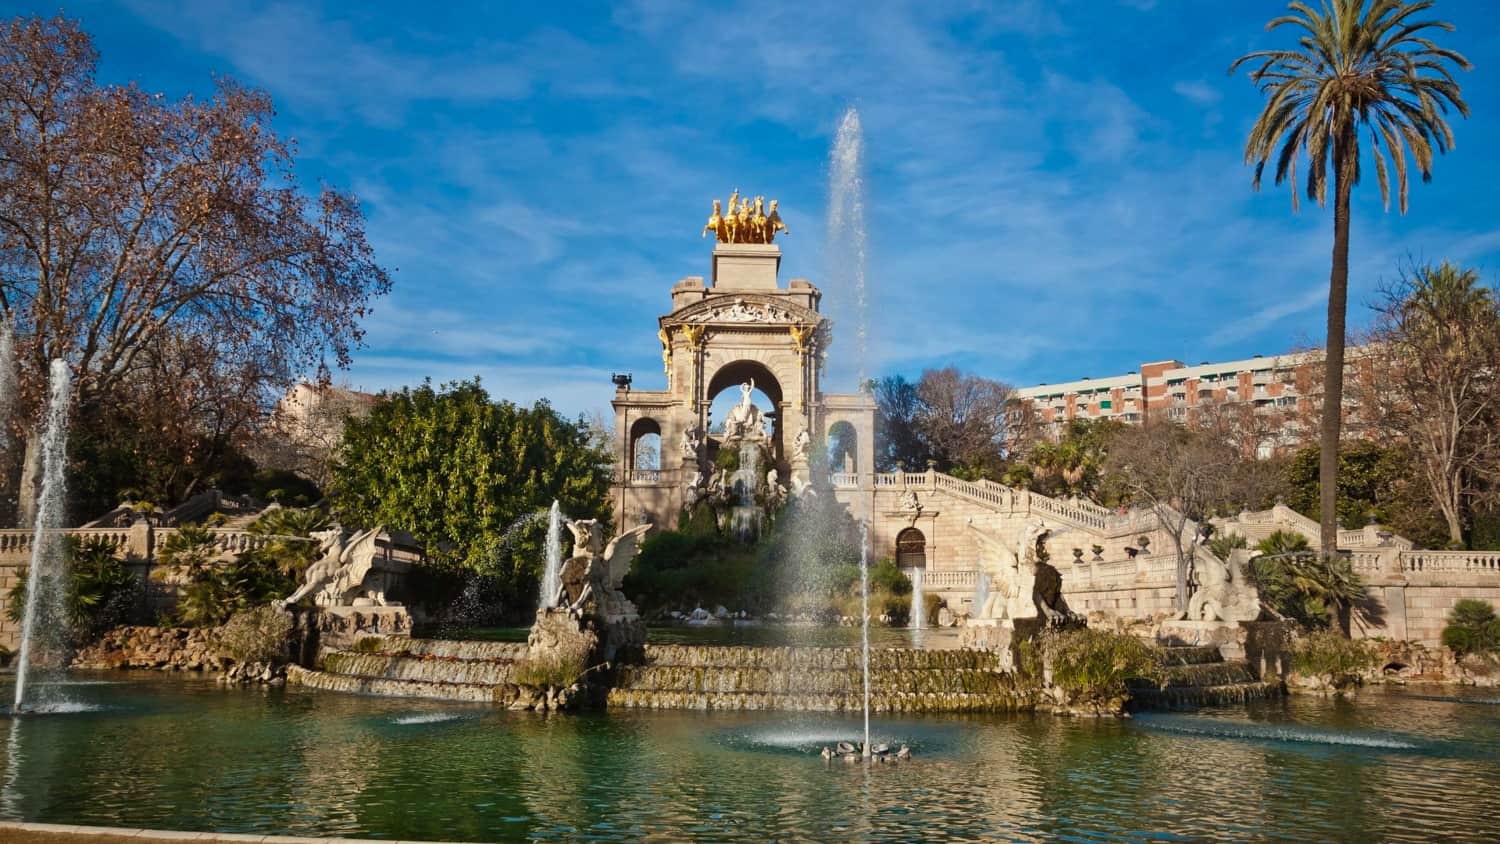 Barcelona Mit kell látogatni, és a legszebb helyek